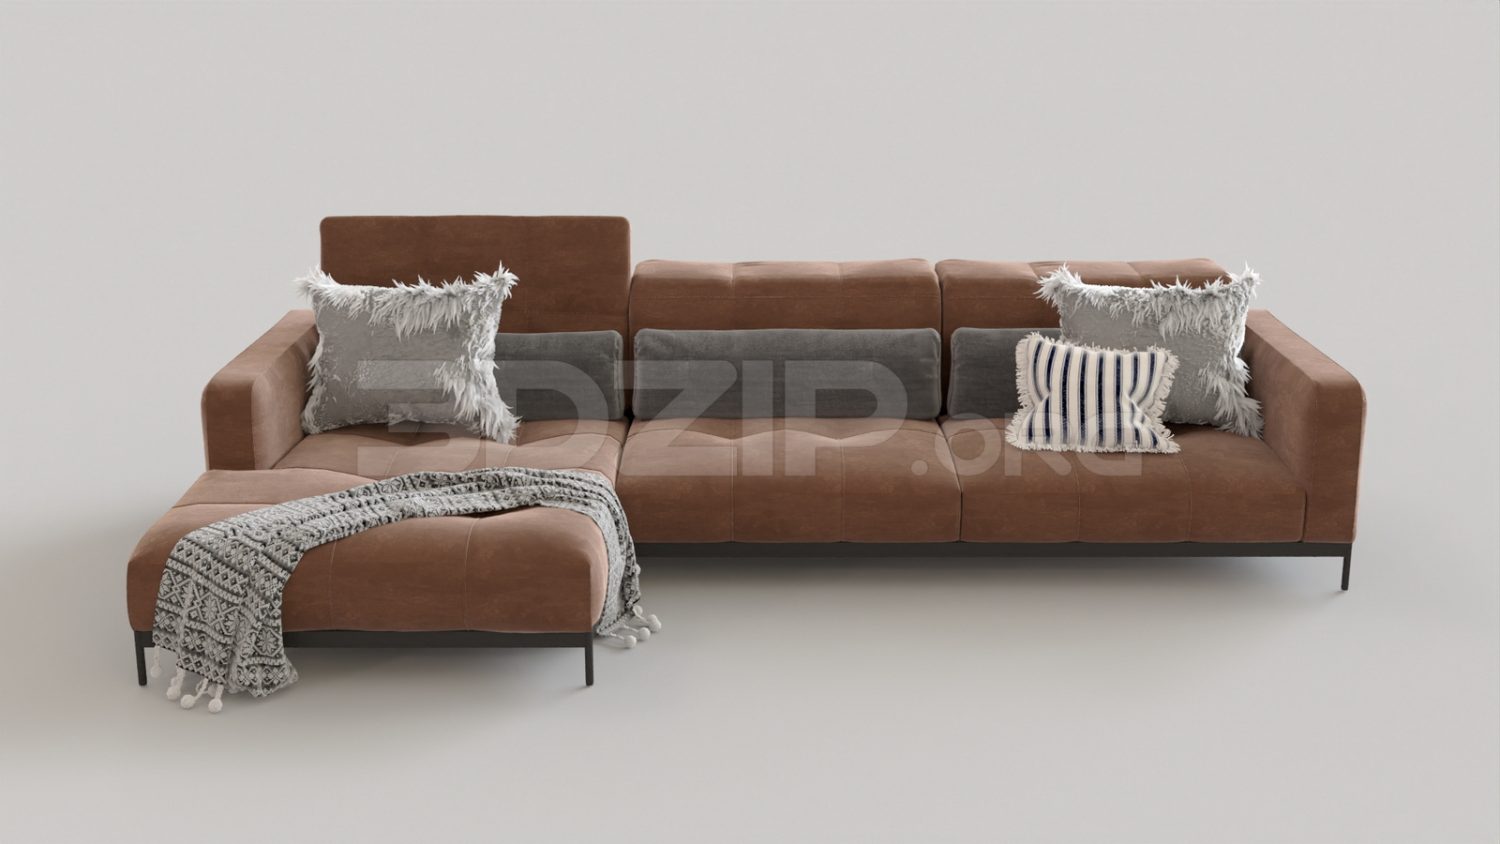 5102. Free 3D Sofa Model Download